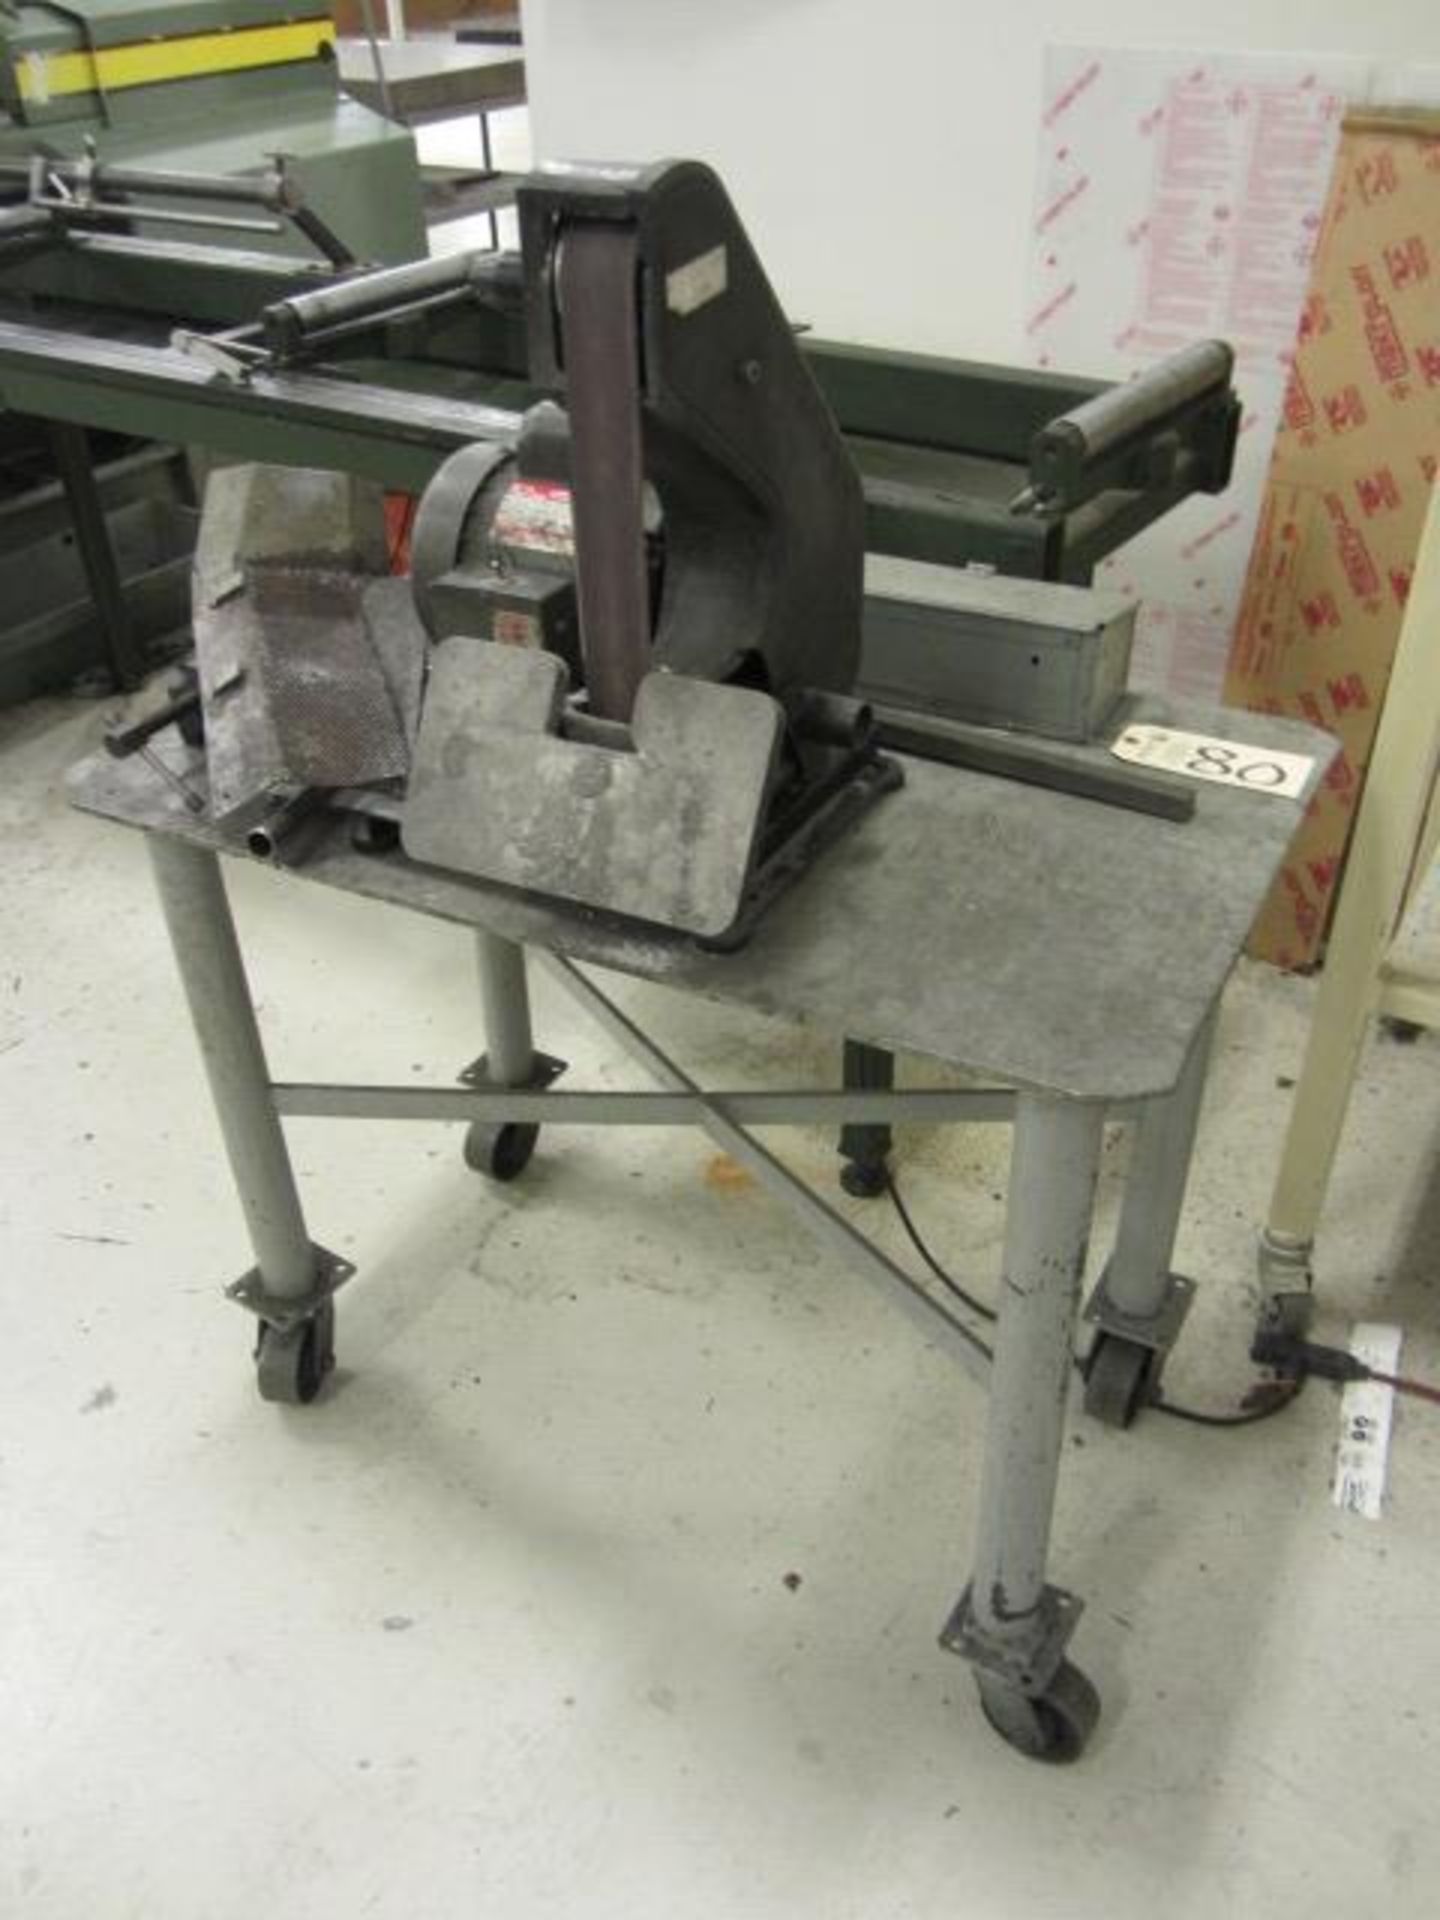 Steel Table with Dayton Belt Sander